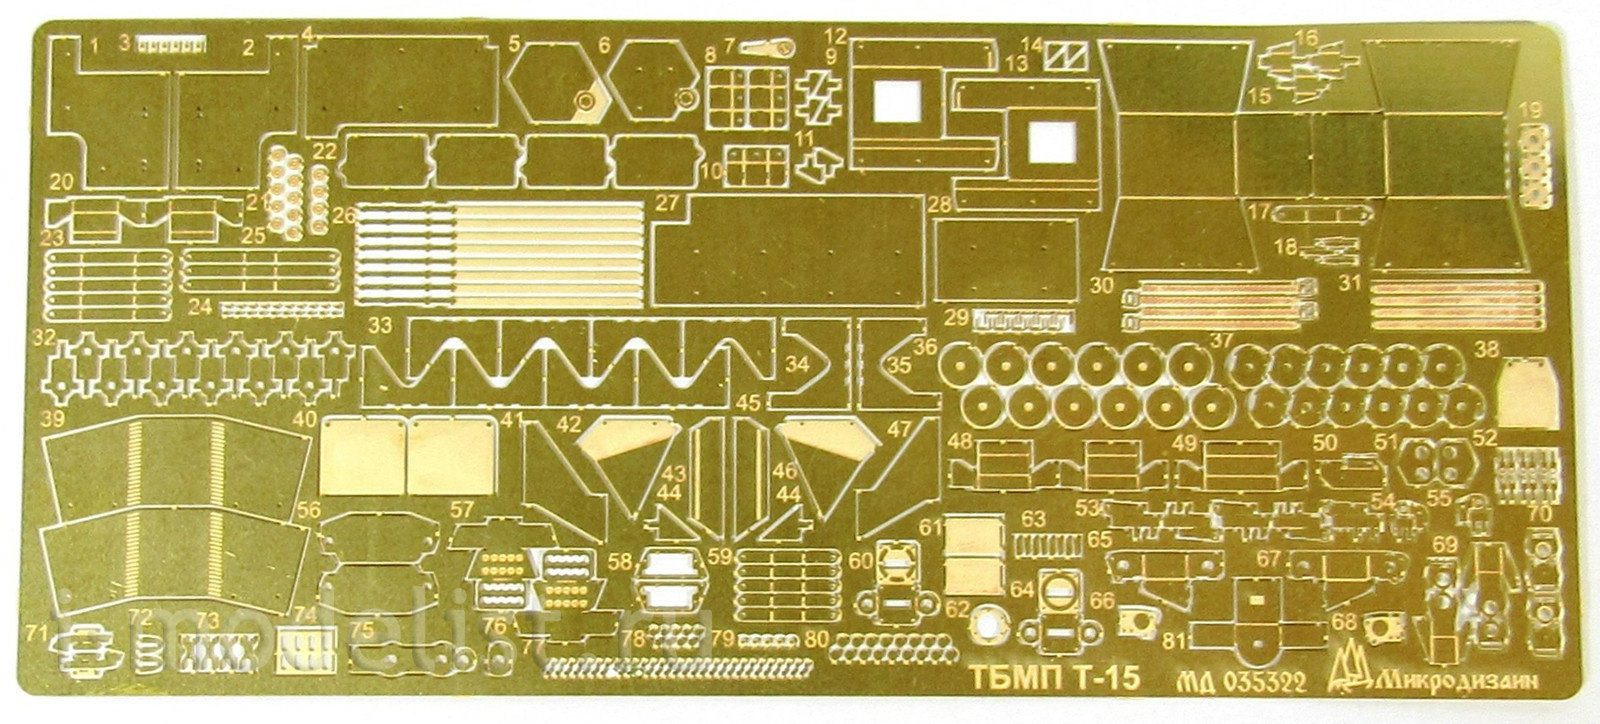 035322 Микродизайн 1/35 ТБМПТ Т-15 Базовый набор